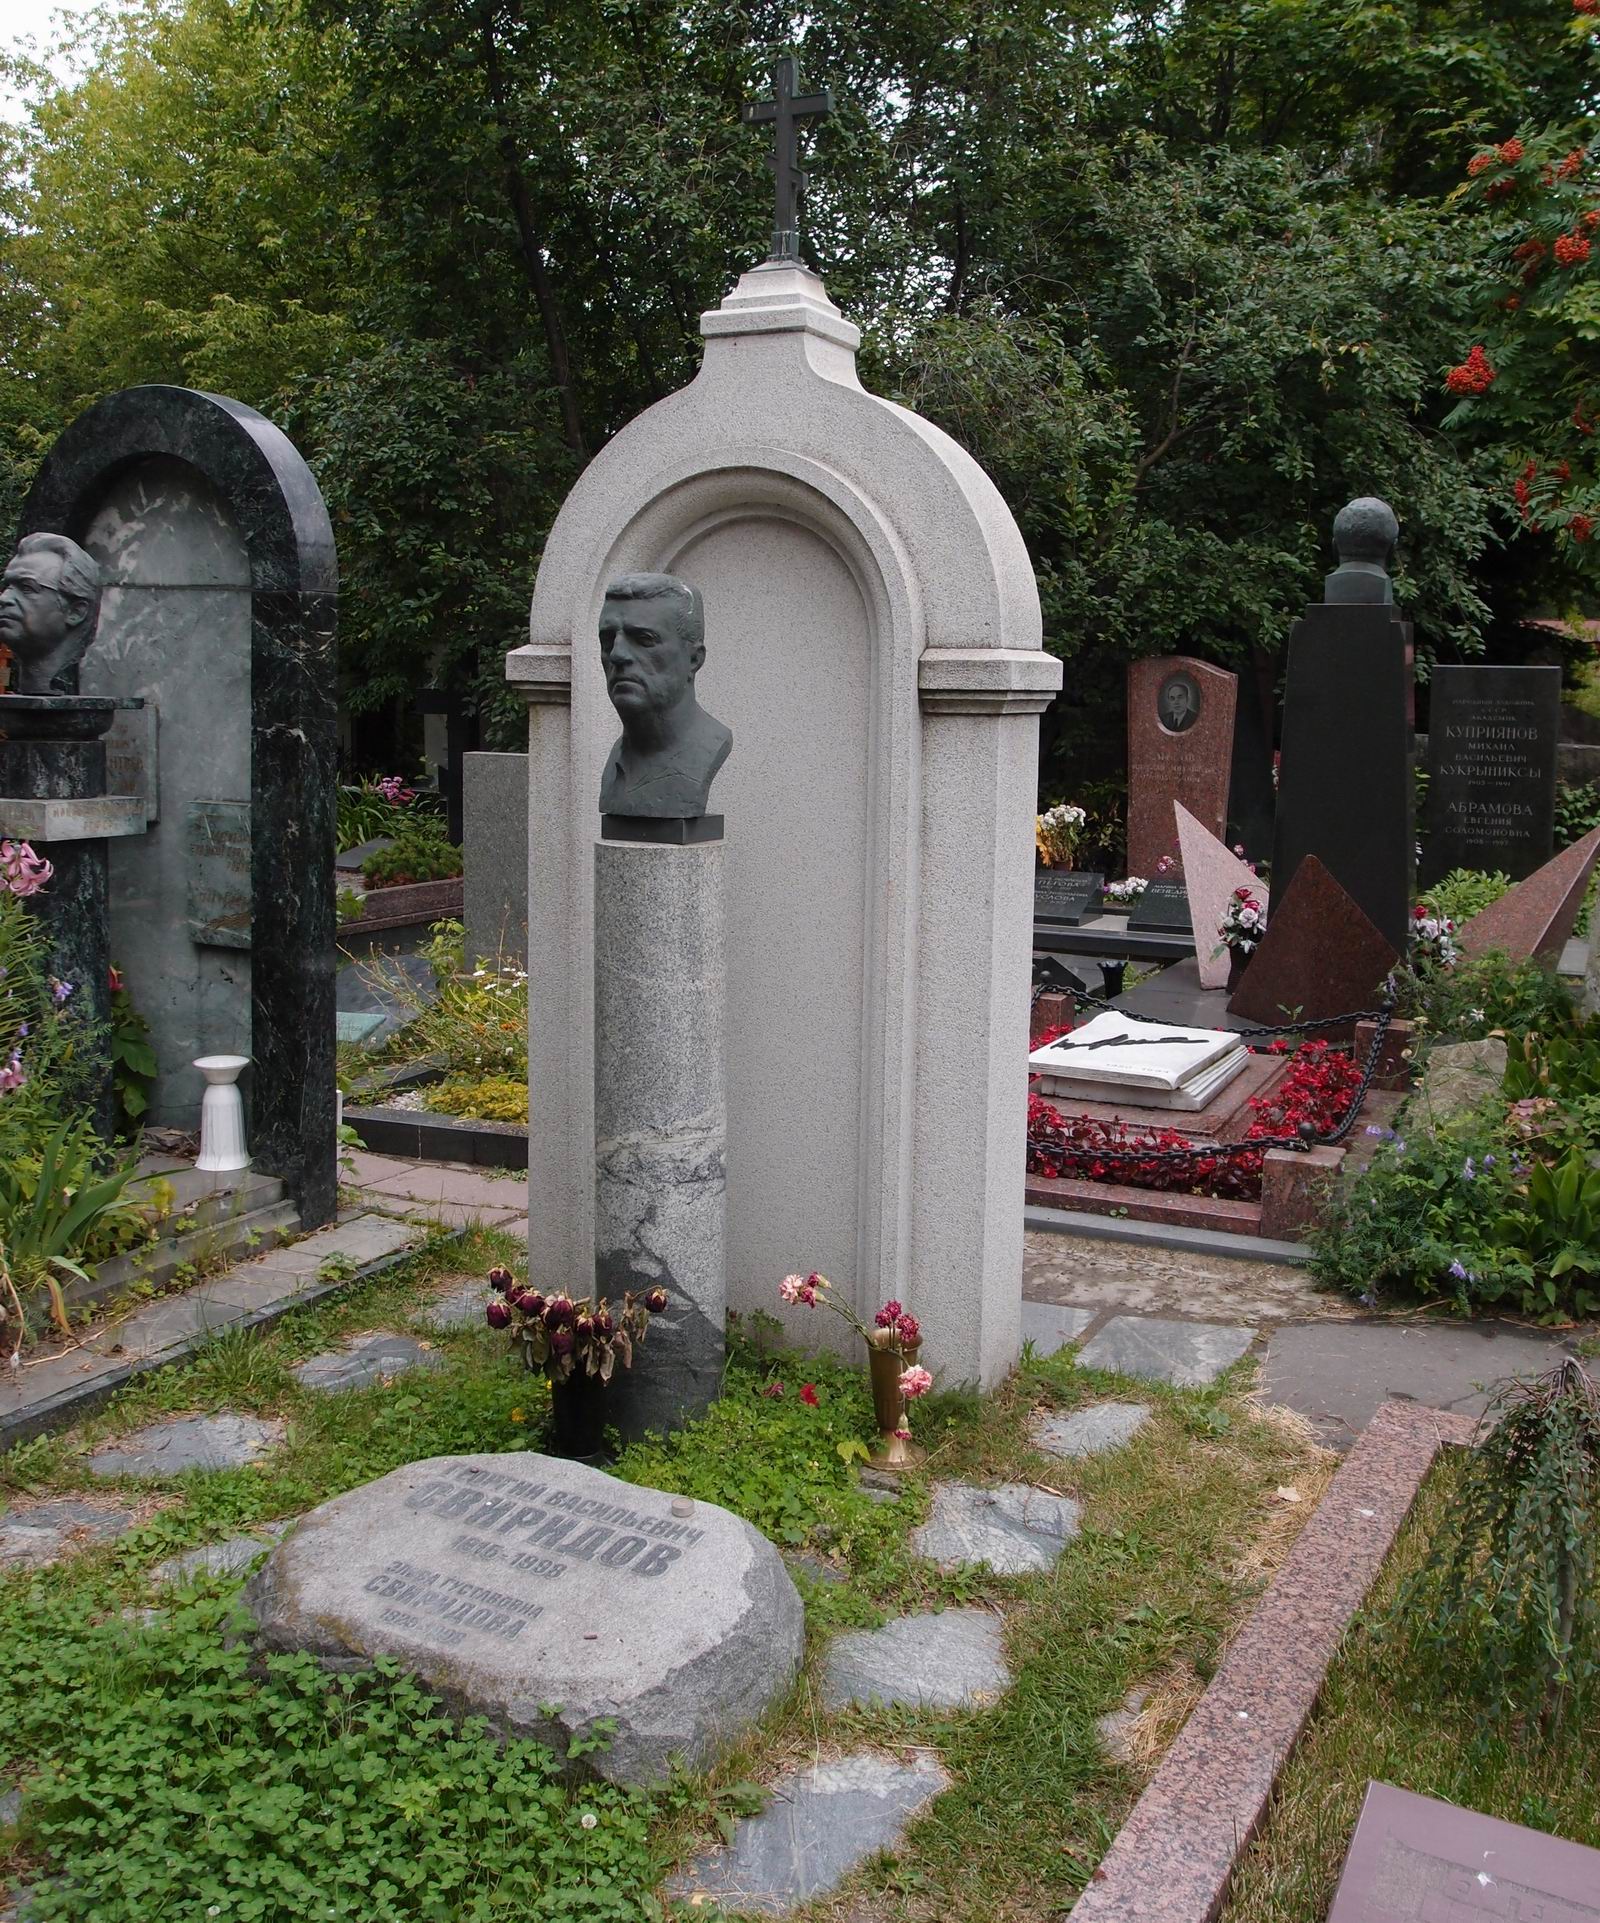 Памятник на могиле Свиридова Г.В. (1915–1998), ск. М.Аникушин, арх. Т.Садовский, на Новодевичьем кладбище (10–9–7). Нажмите левую кнопку мыши чтобы увидеть фрагмент памятника.